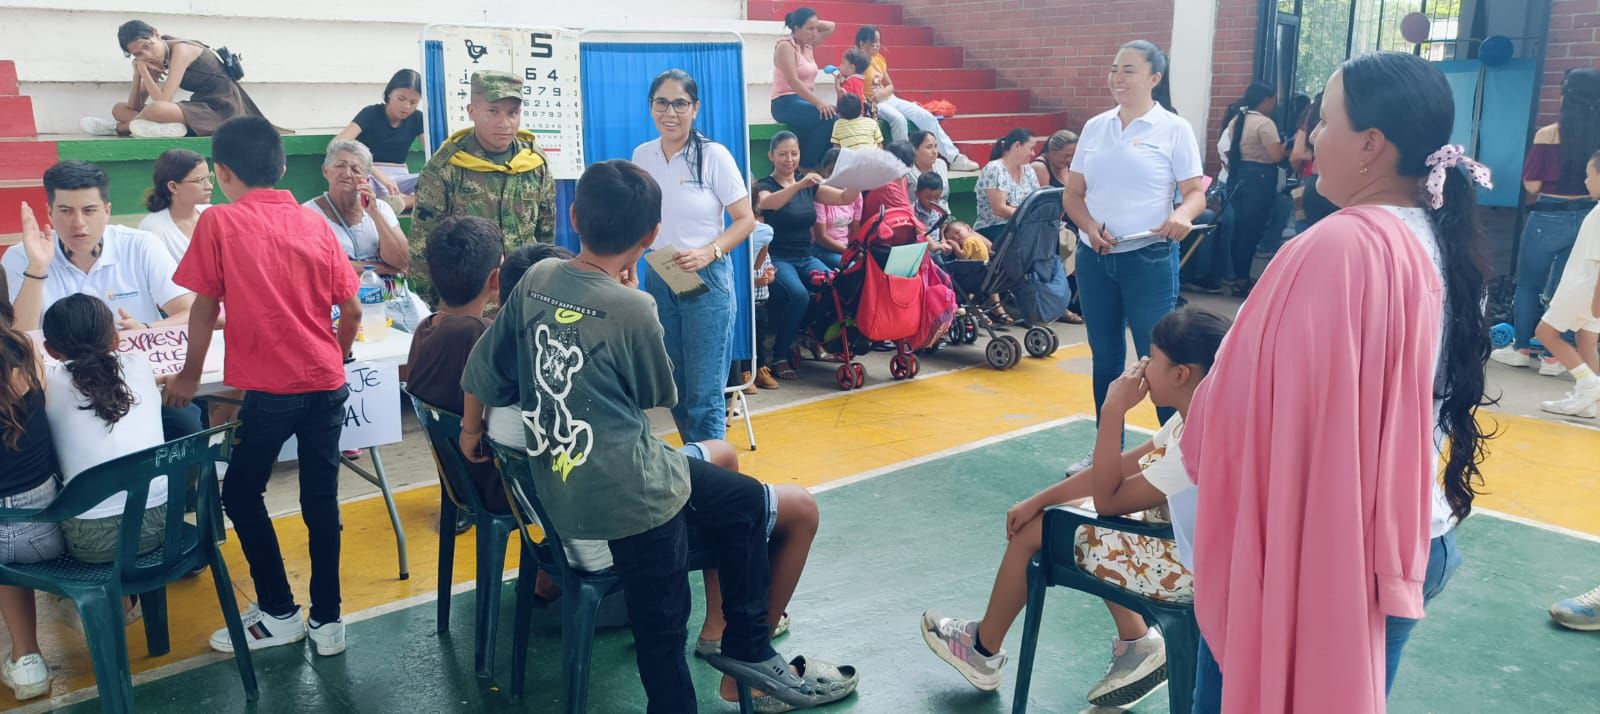 Ejército llevó a cabo Jornada de Apoyo al Desarrollo en San Luis de Palenque